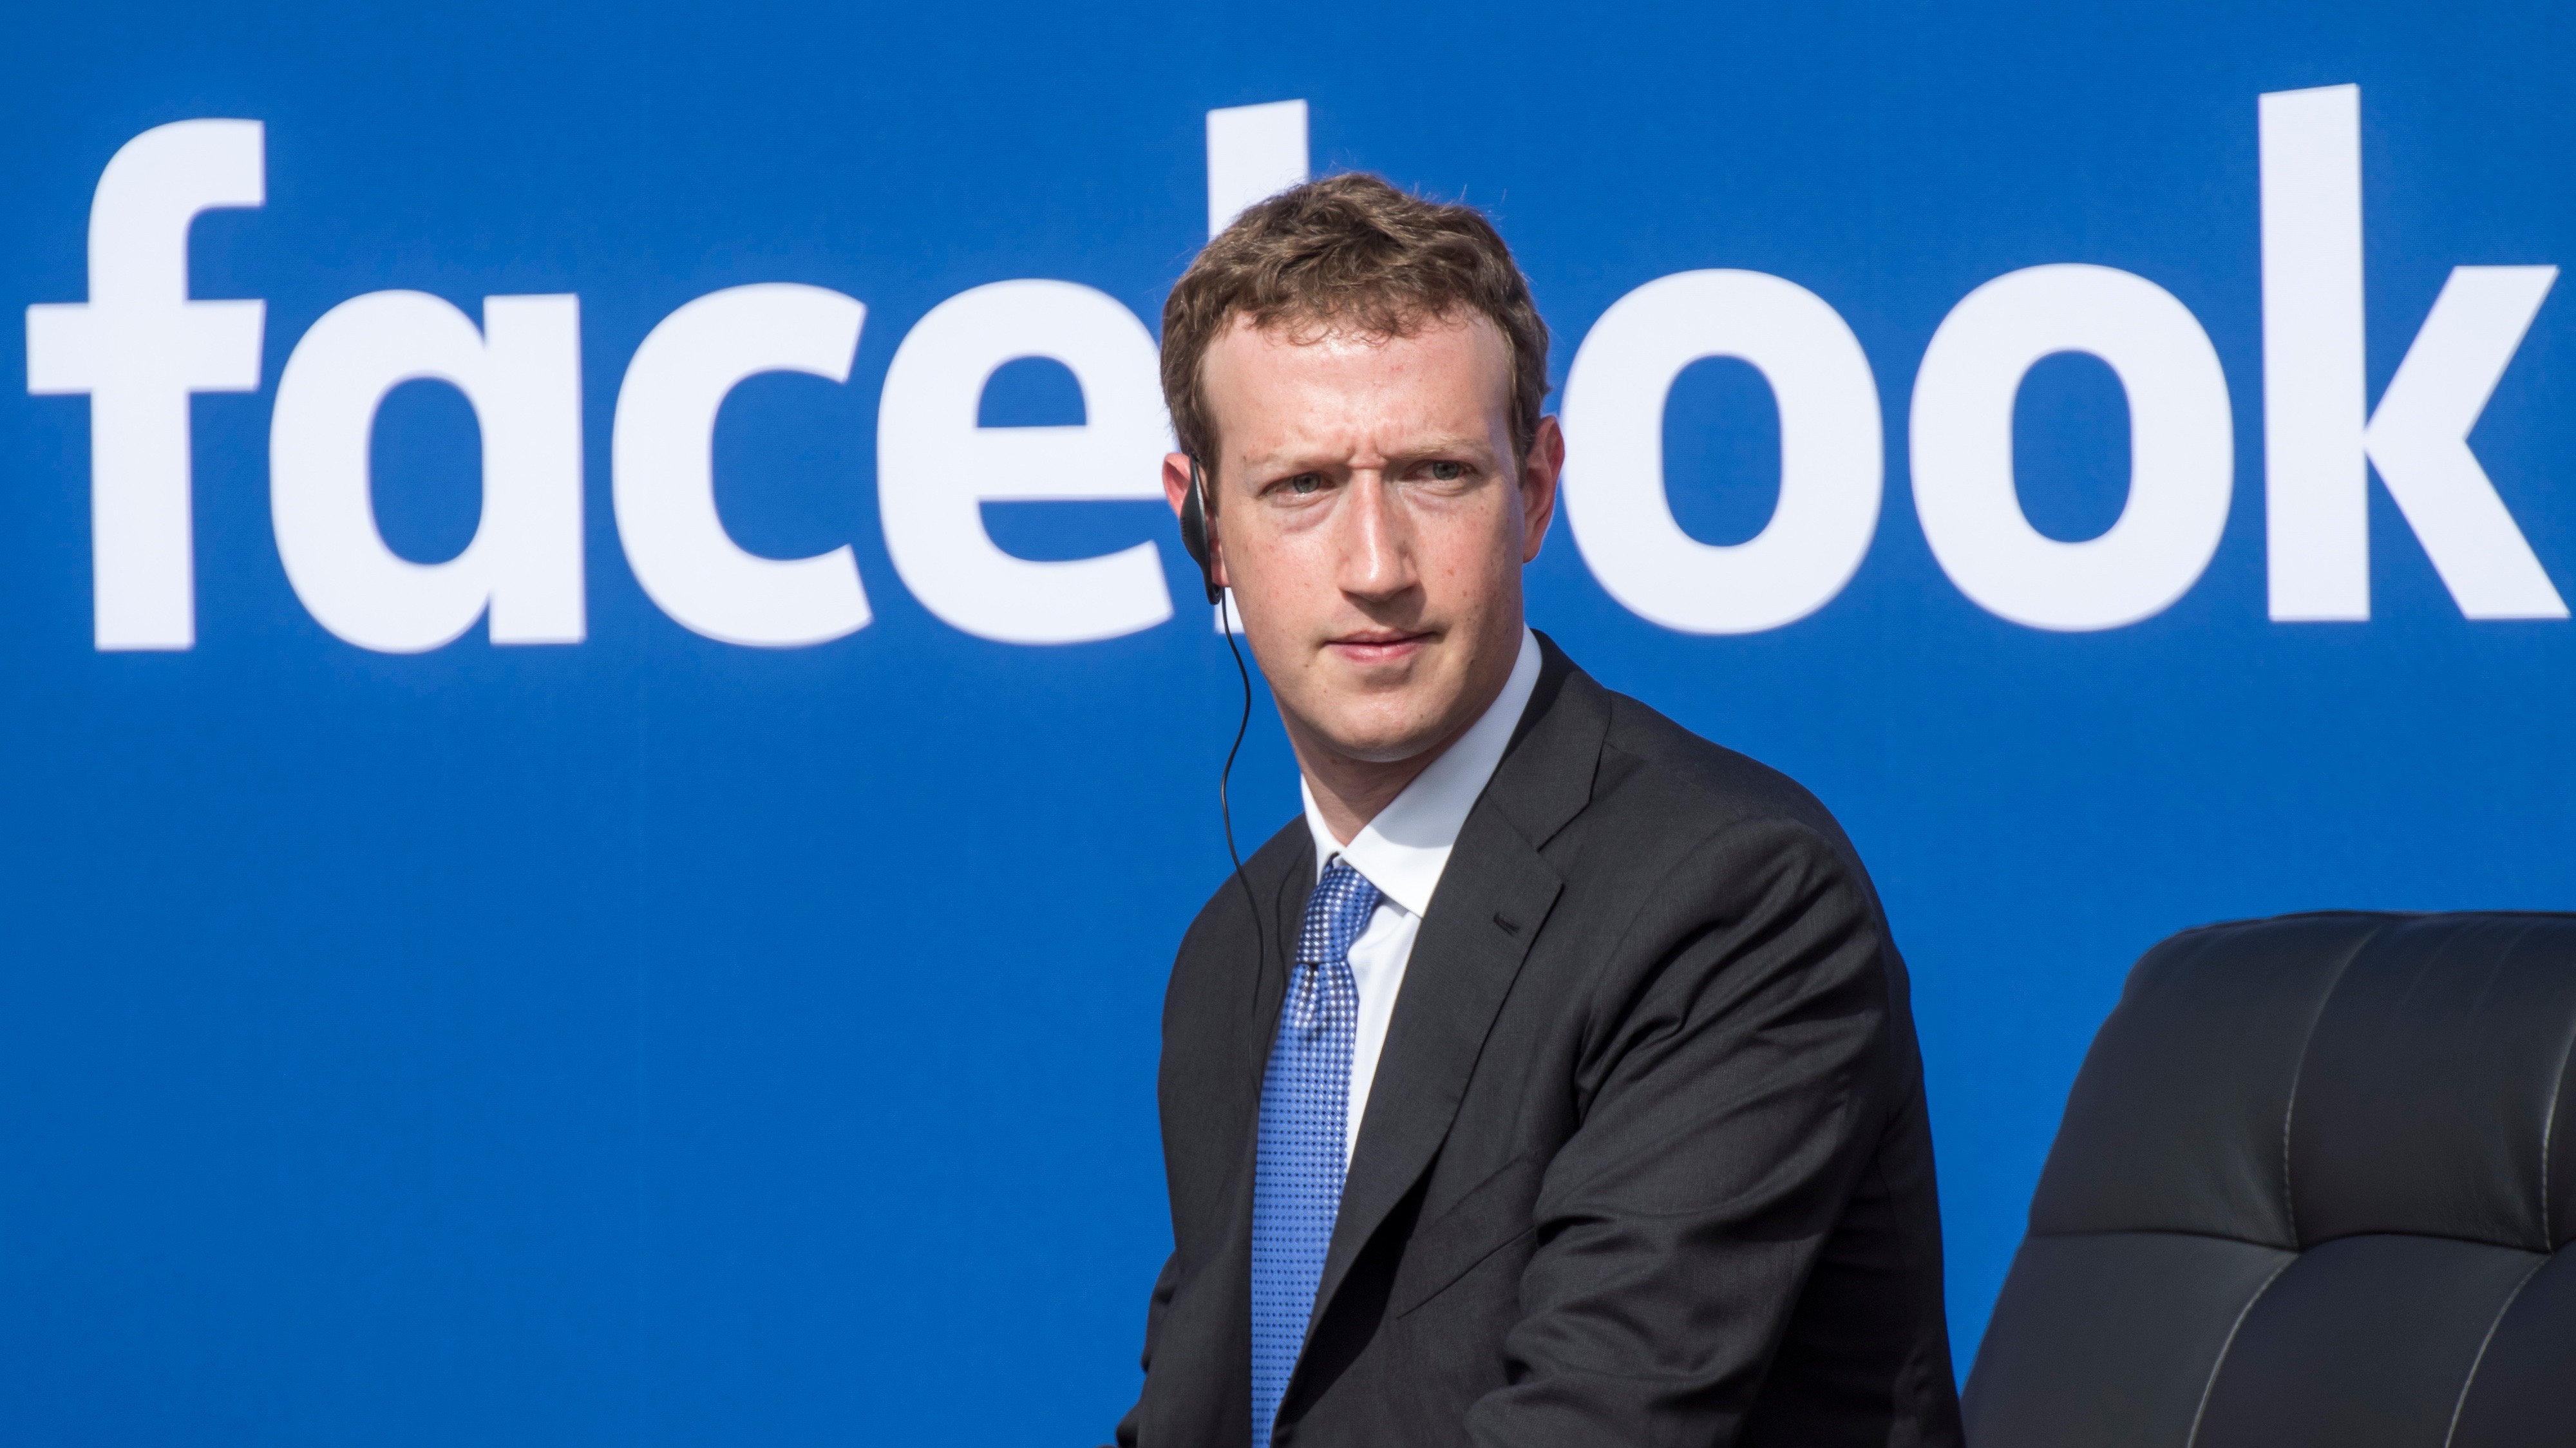 زوكربرج يتعهد بمراجعة السياسات الخاصة بمحتوى فيسبوك